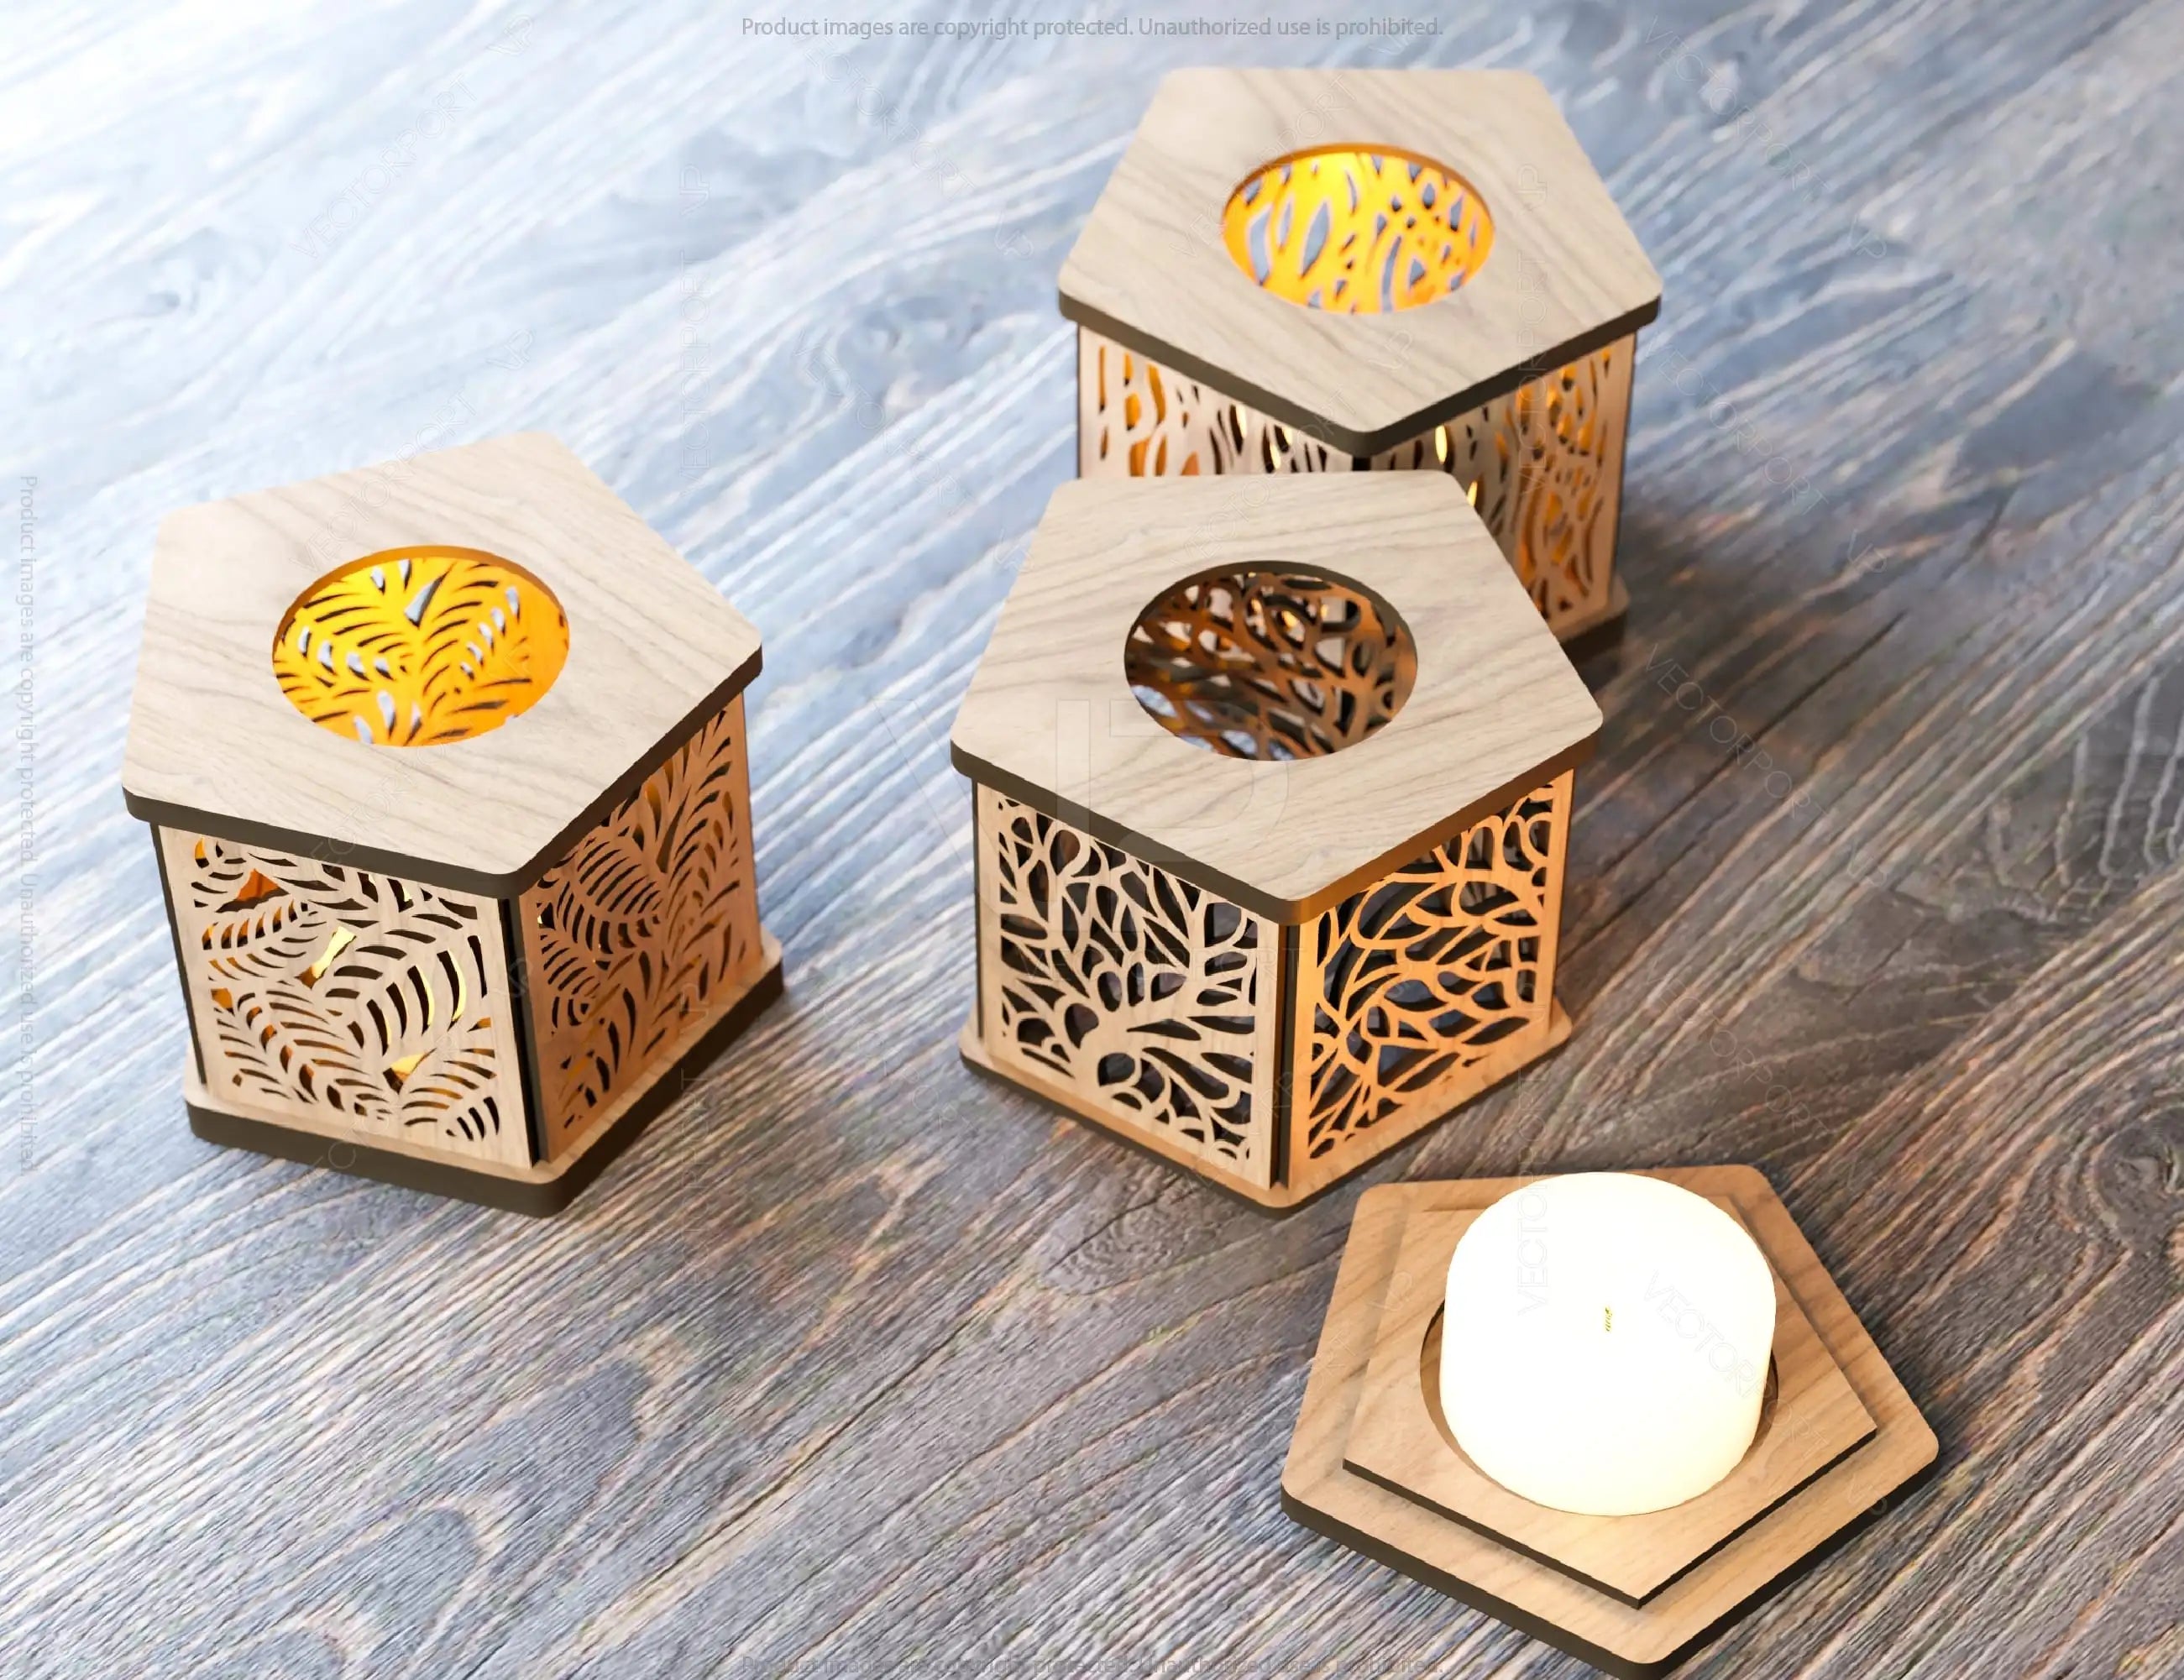 Candle Holder Laser Cut Lamp plywood Tea light Lantern Votive Gift  Wooden table Lamp Lantern Digital Download SVG |#U167|